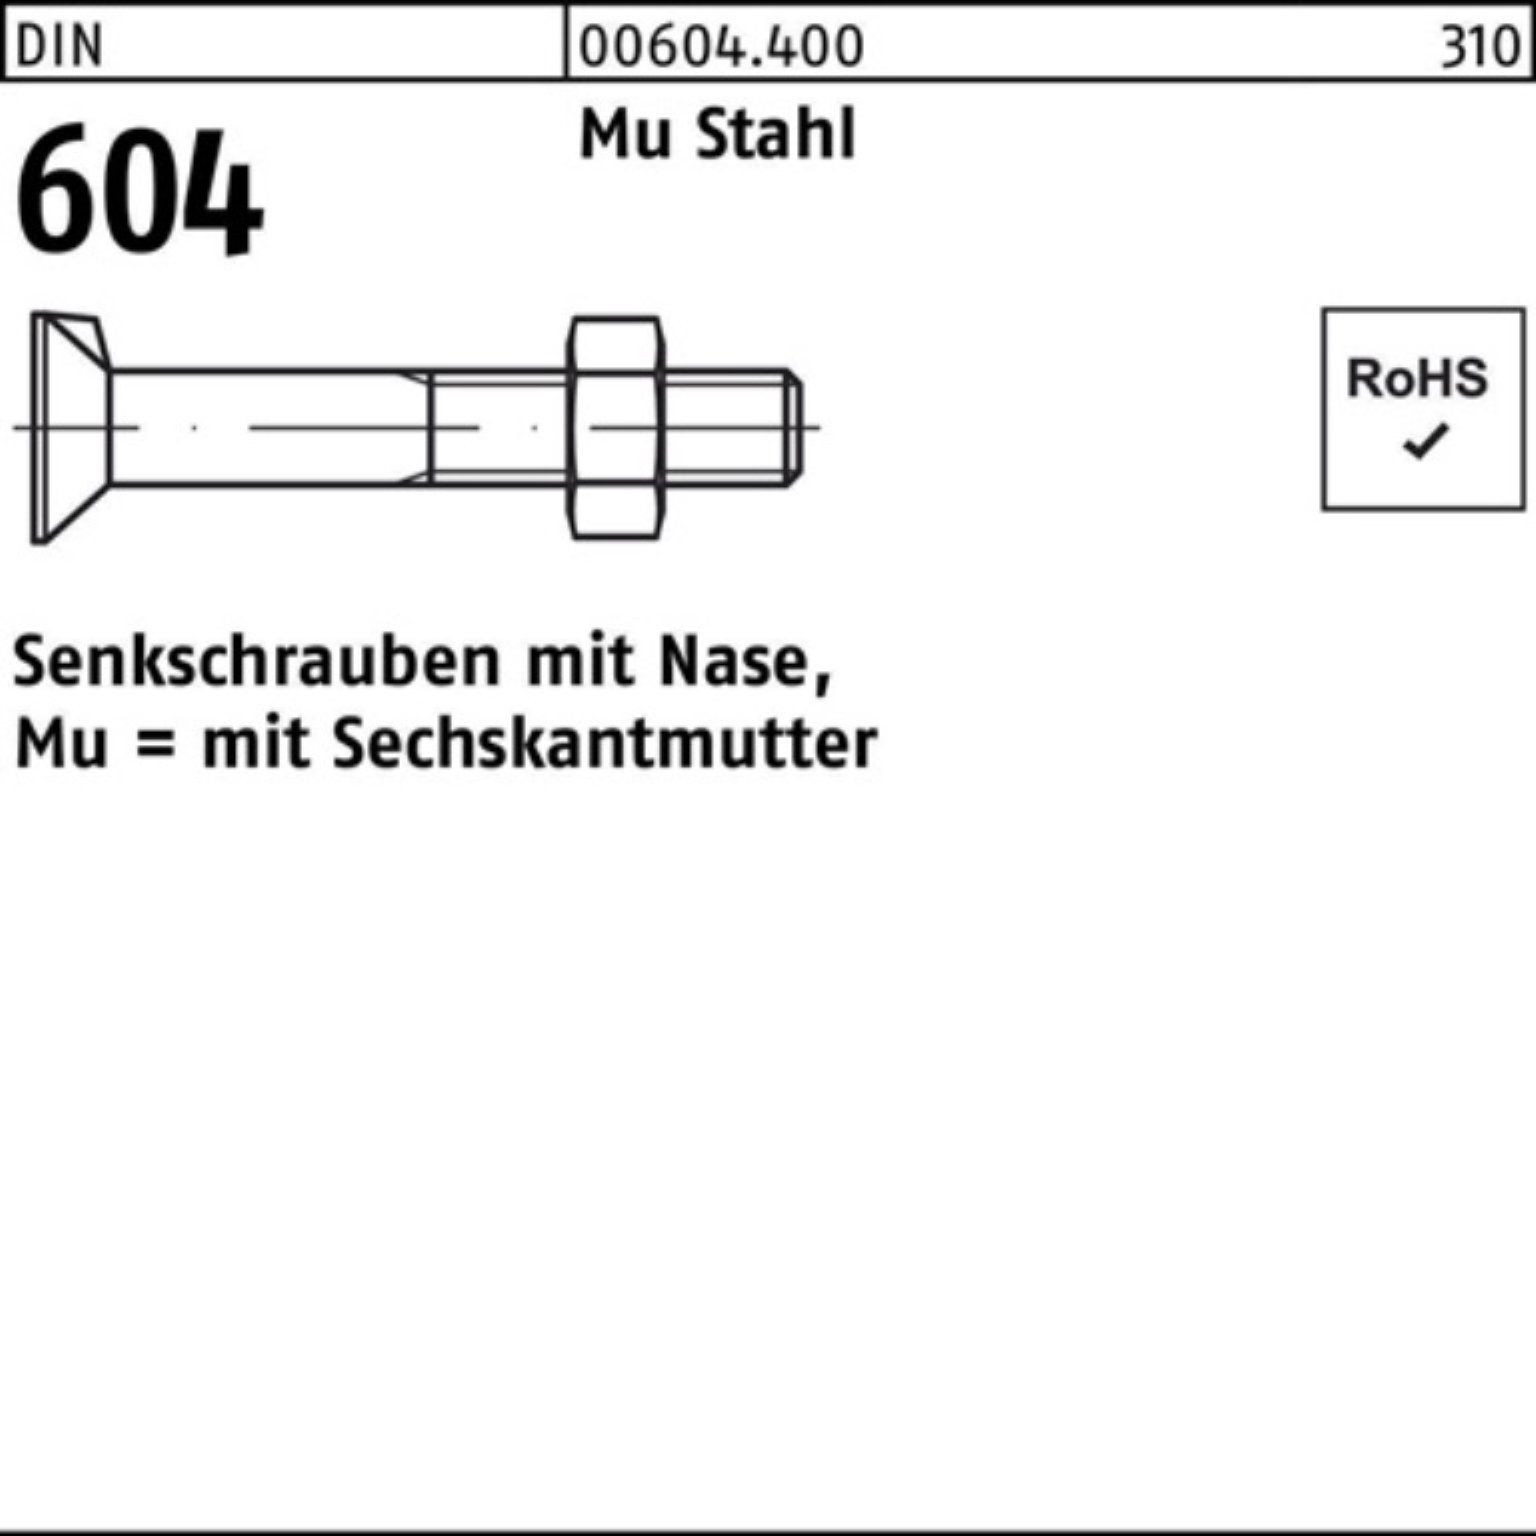 100er Senkschraube Senkschraube Mu Nase/6-ktmutter 4.6 50 1 Stahl M12x Reyher 604 DIN Pack